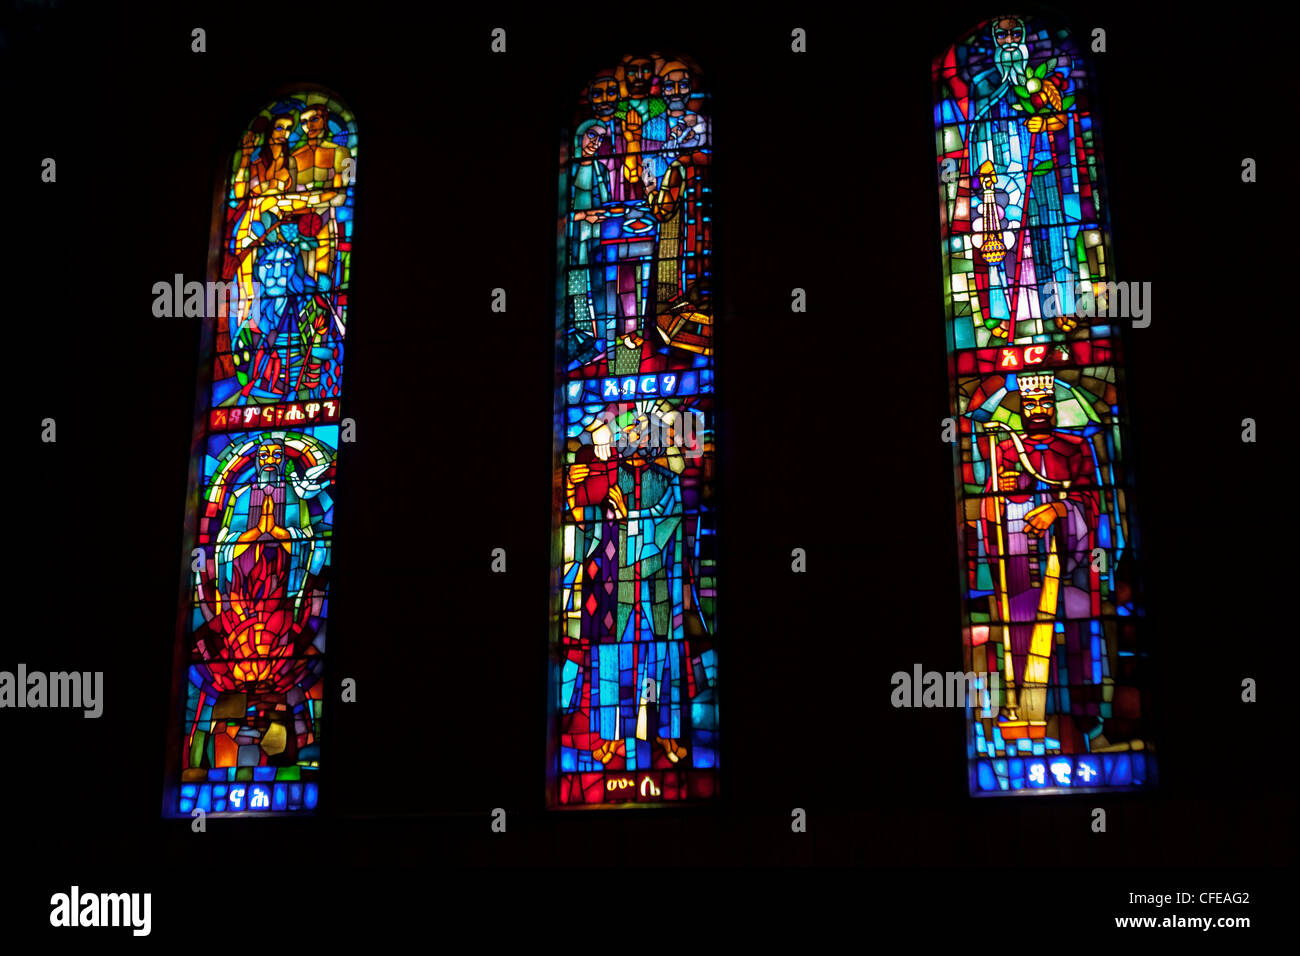 Debre Libanos. Monastero. Chiesa Ortodossa. Etiopia. Le finestre di vetro macchiate dall'interno raffiguranti vari santi. Foto Stock